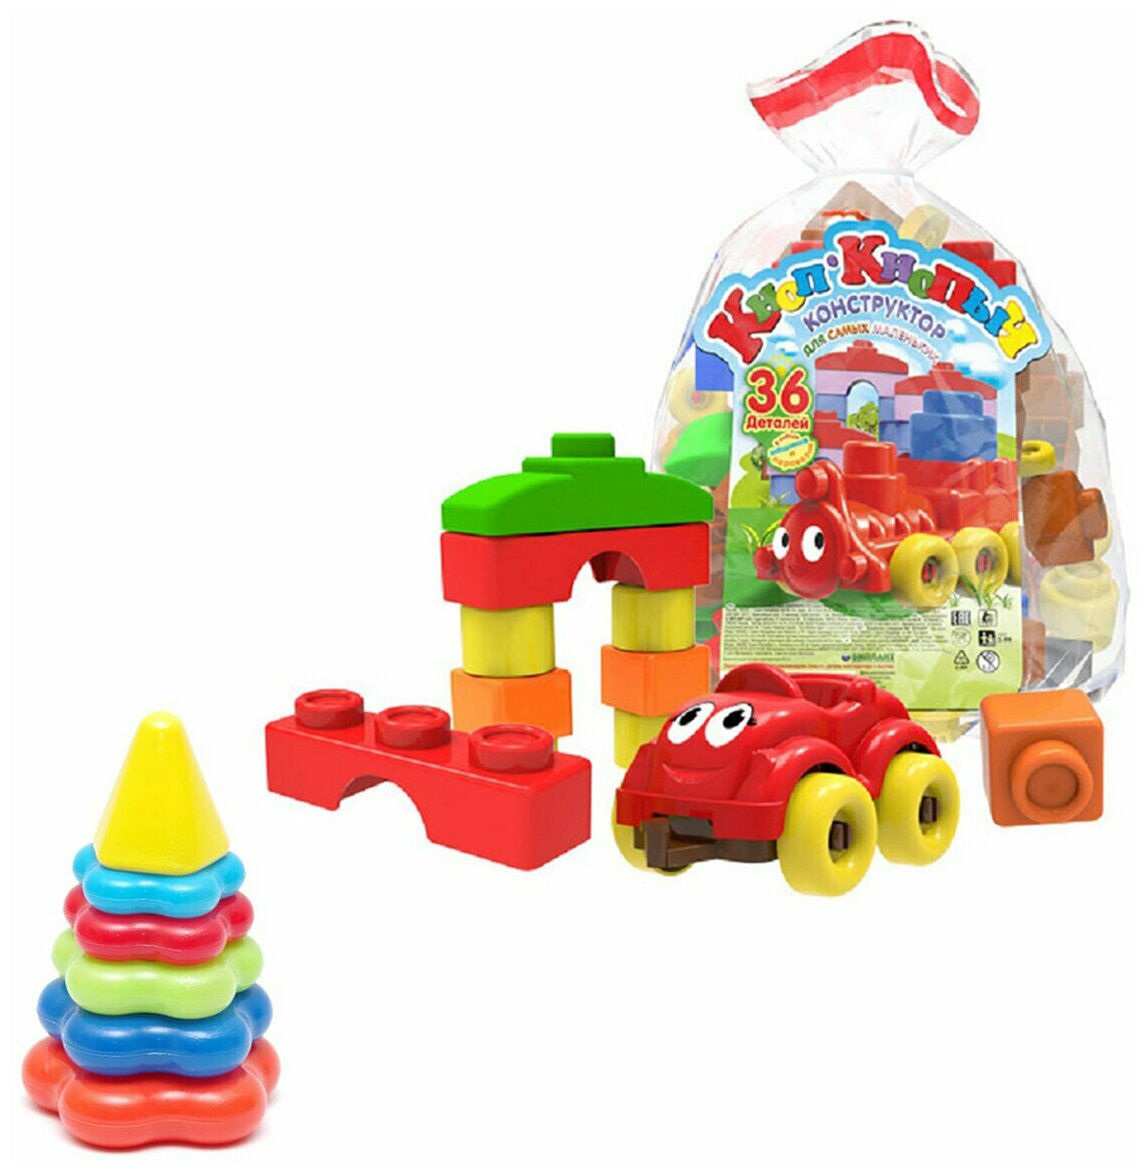 Развивающие игрушки для малышей набор Конструктор "Кноп-Кнопыч" 36 деталей + Пирамидка детская малая